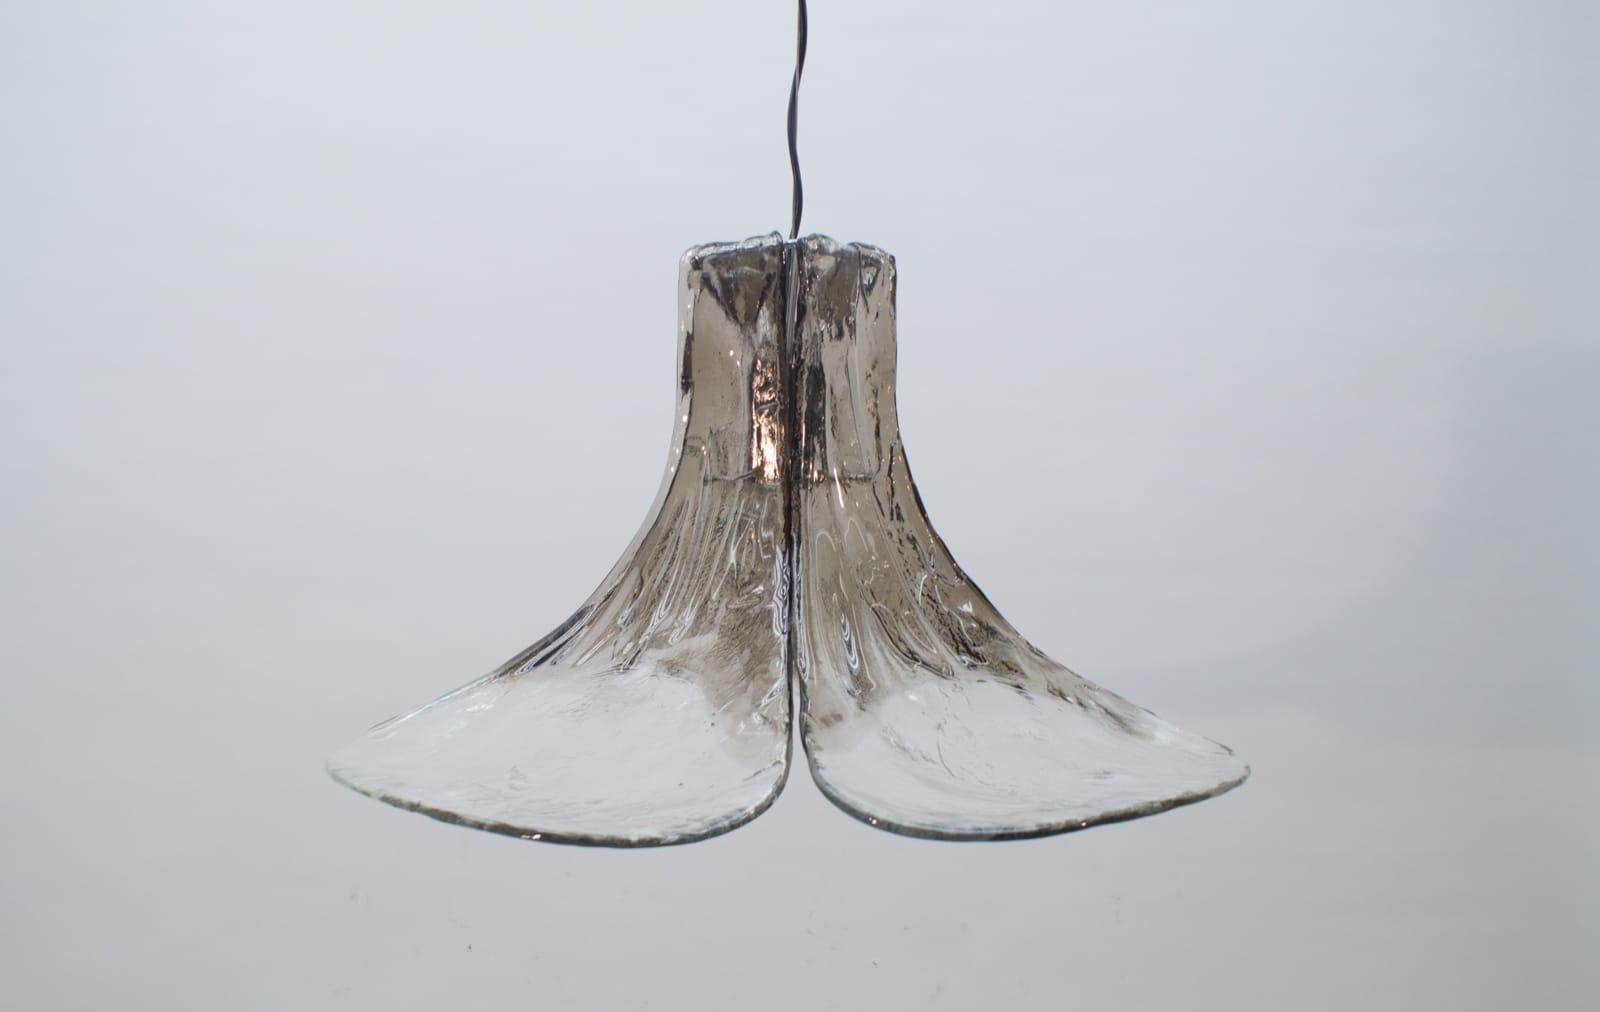 Carlo Nason Mazzega Pendant Lamp for J.T. Kalmar in Murano Glass, 1970s ...